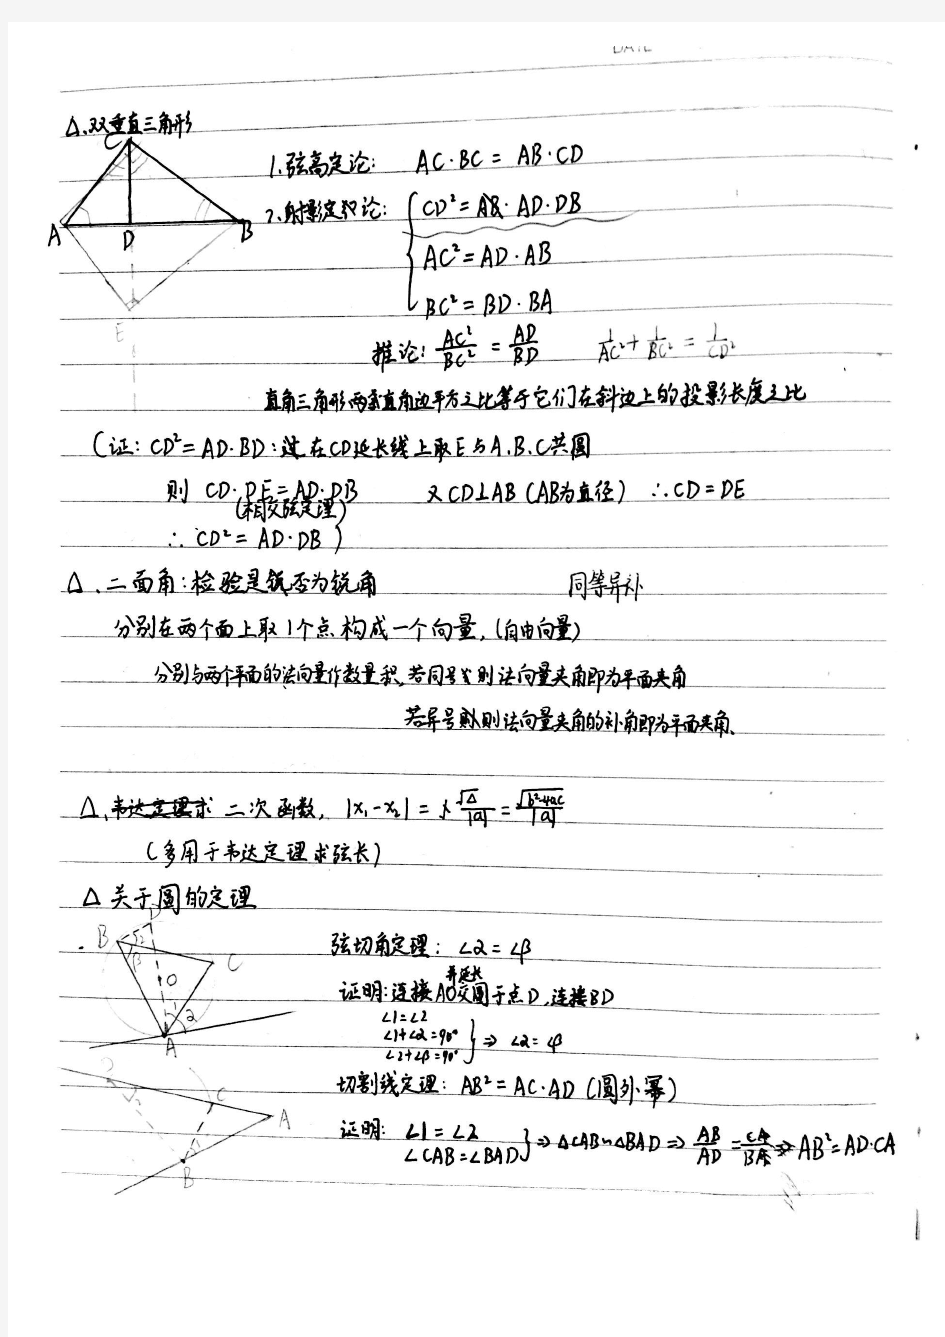 全国高考状元手写笔记合集理科数学.pdf